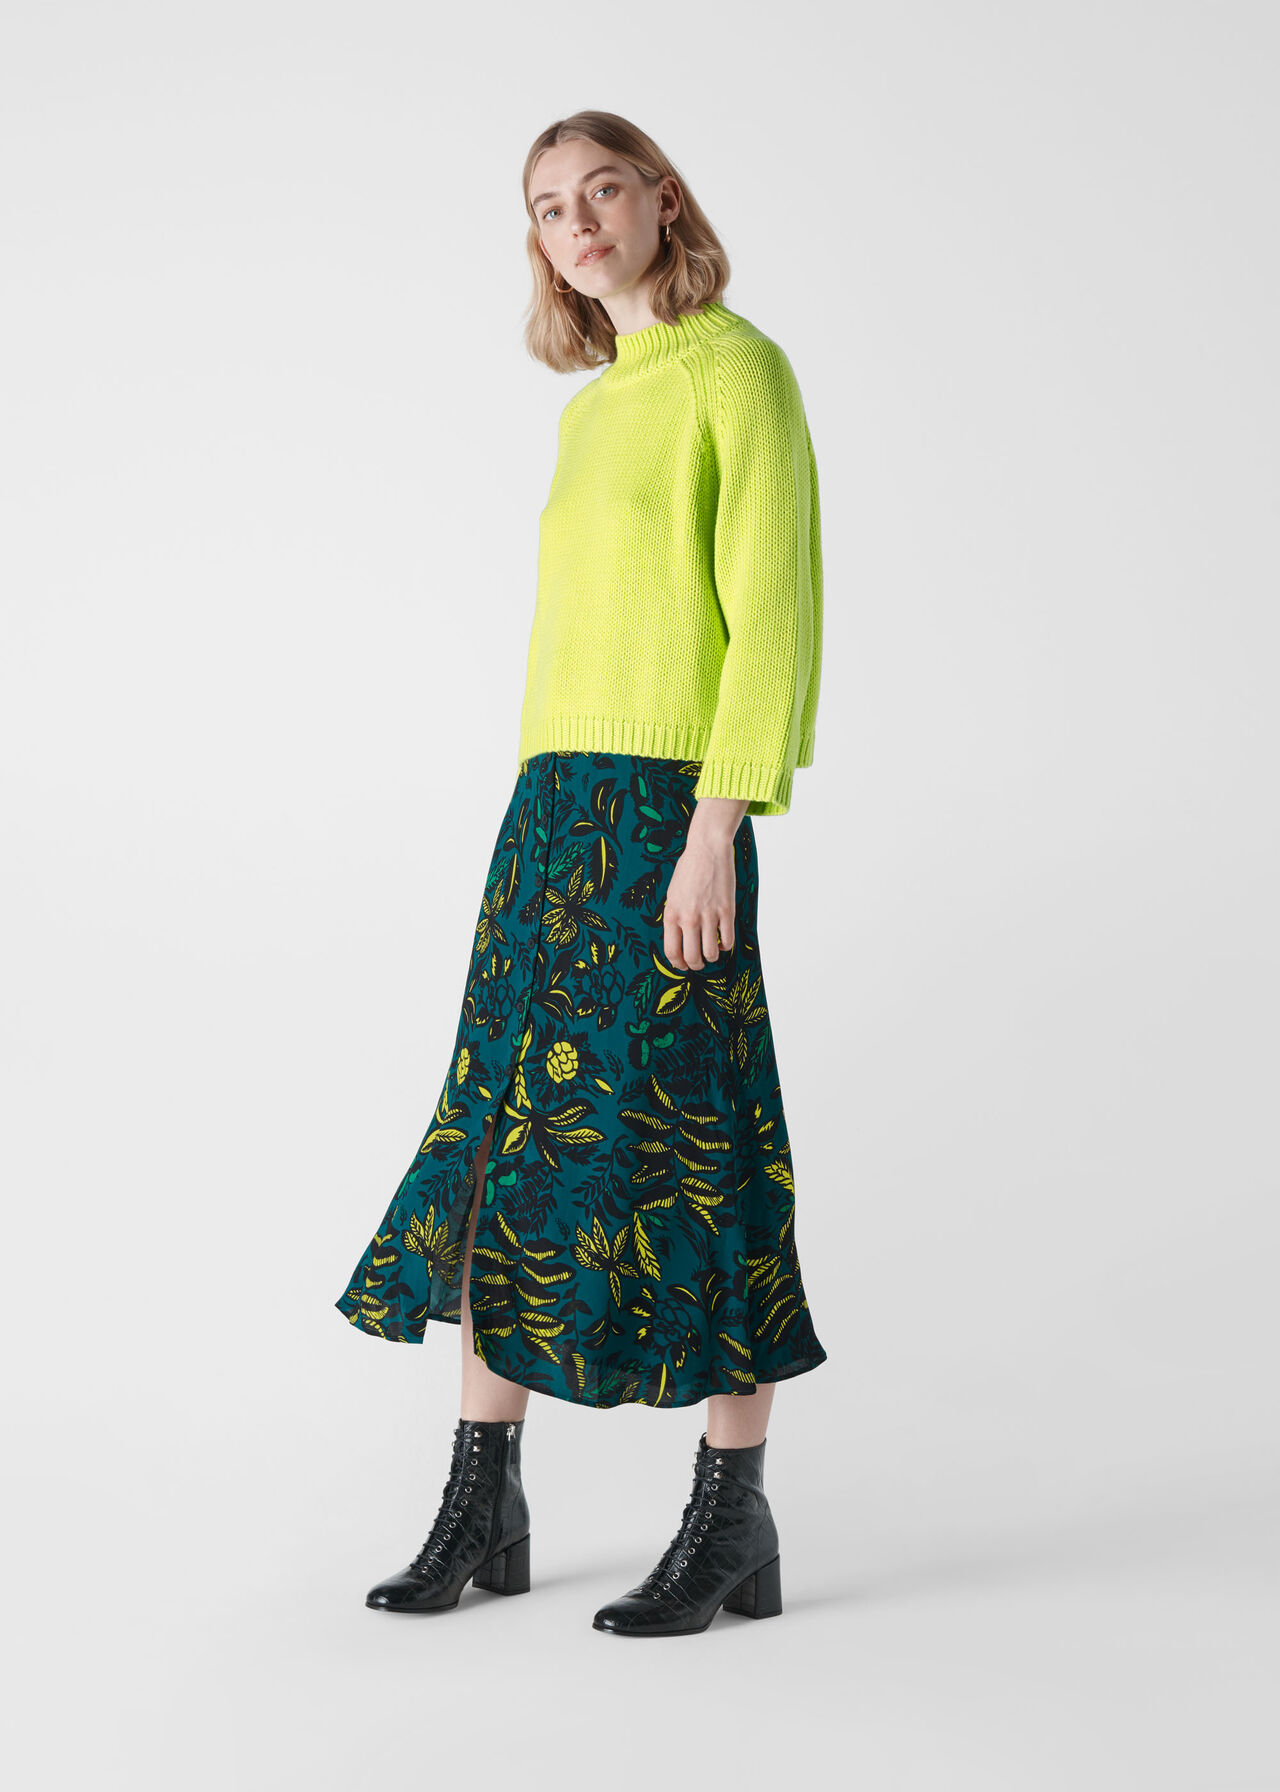 Assorted Leaves Print Skirt Green/Multi